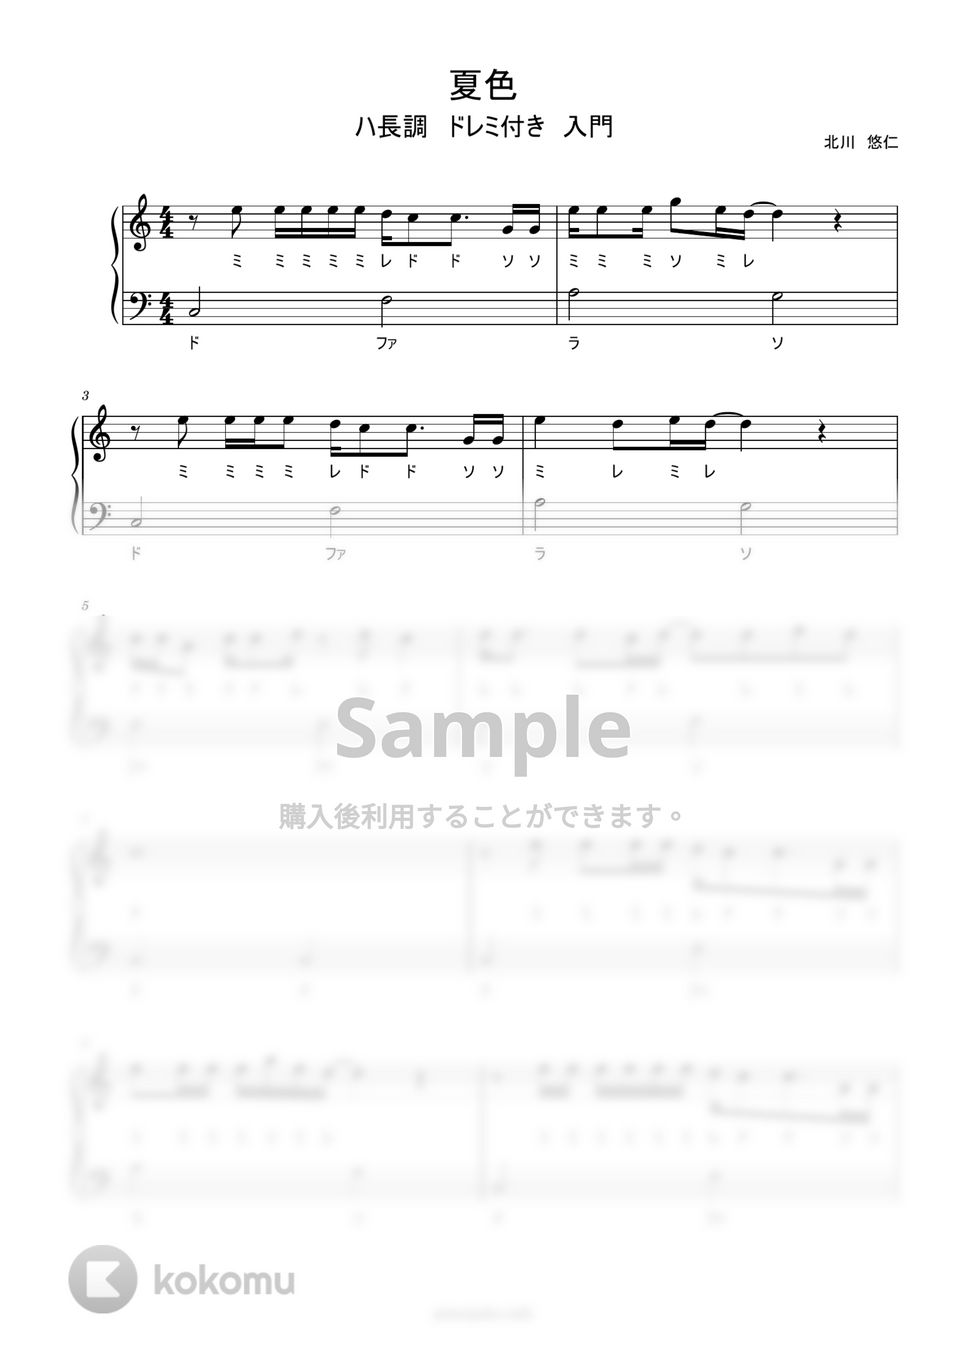 ゆず - 夏色 (ハ長調ドレミ付き簡単楽譜) by ピアノ塾